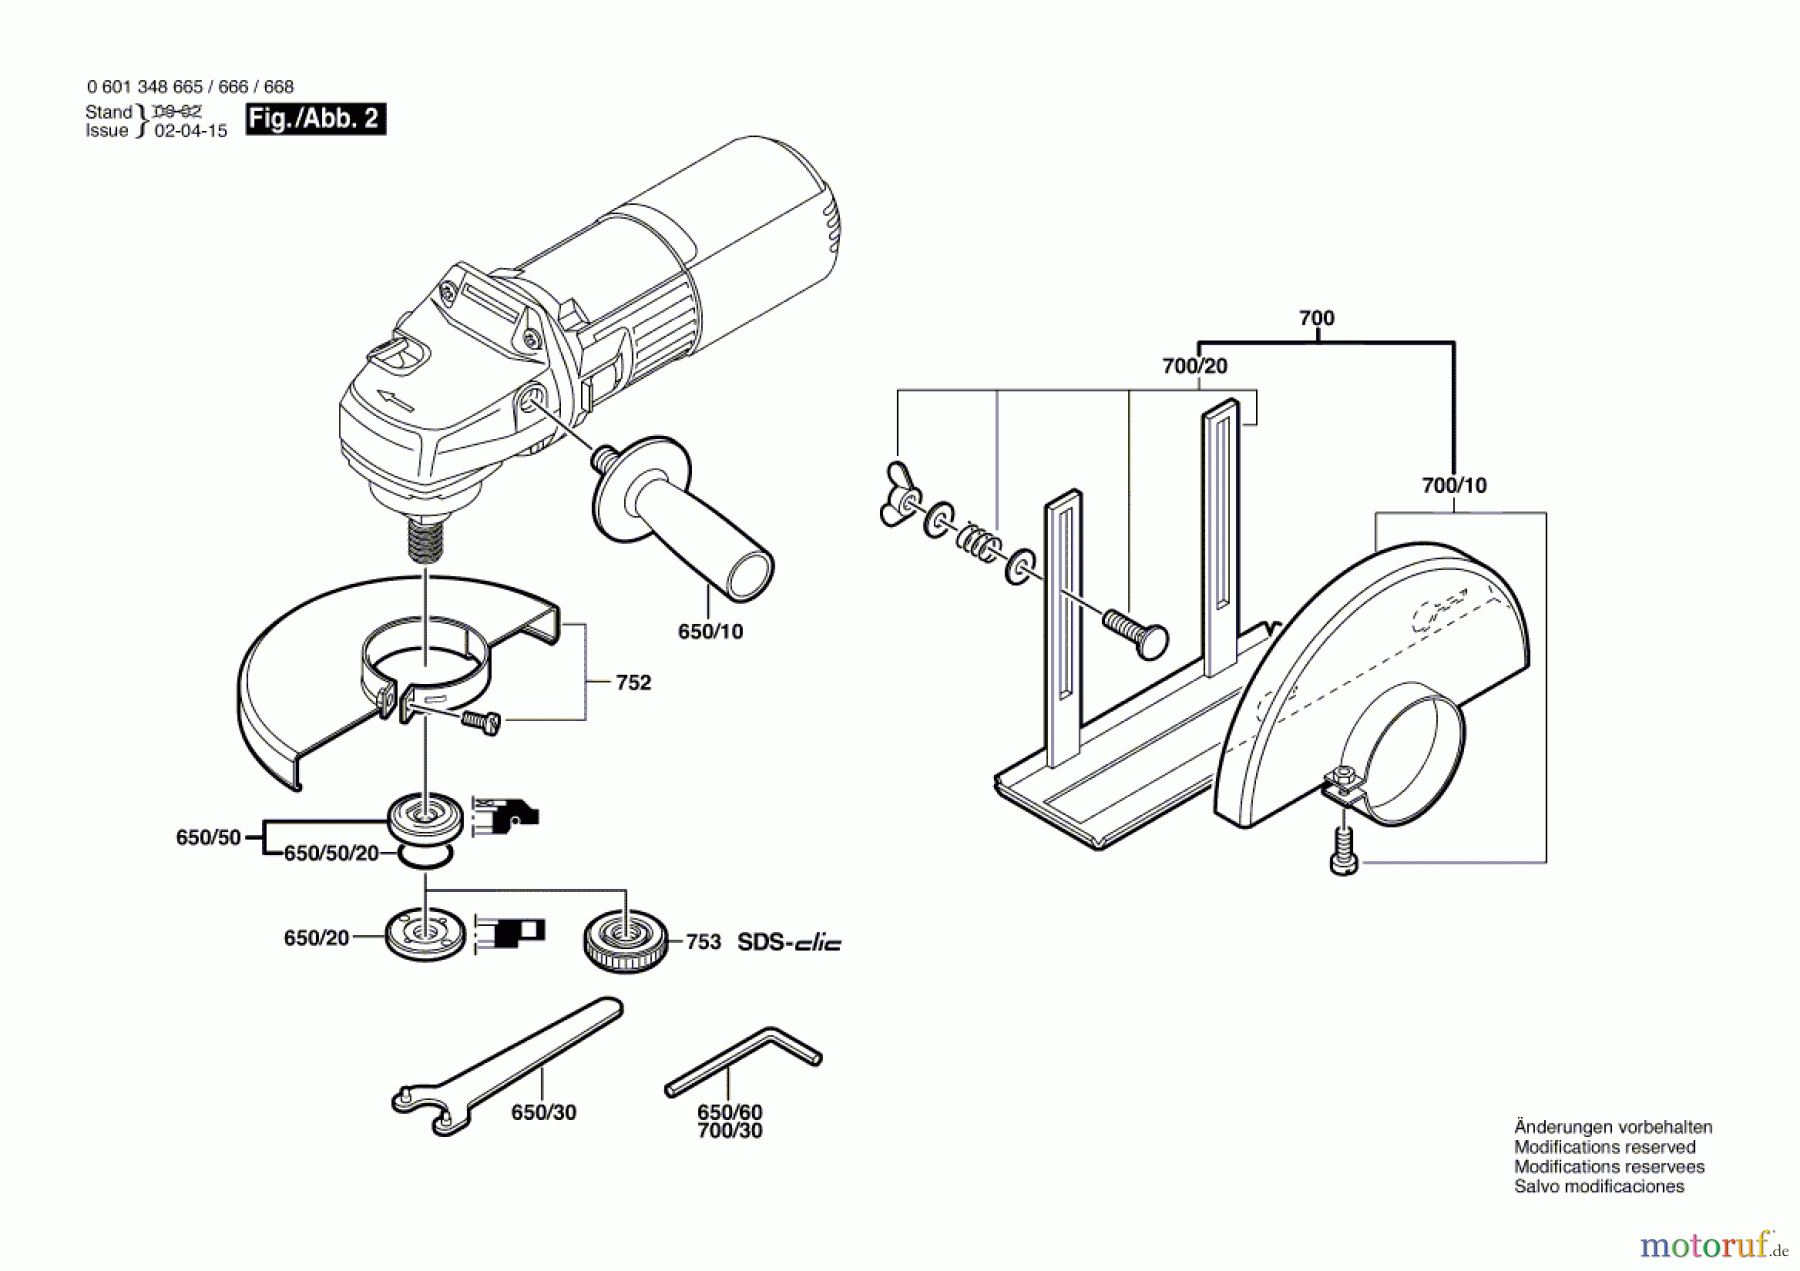  Bosch Werkzeug Winkelschleifer WS 125 S Seite 2